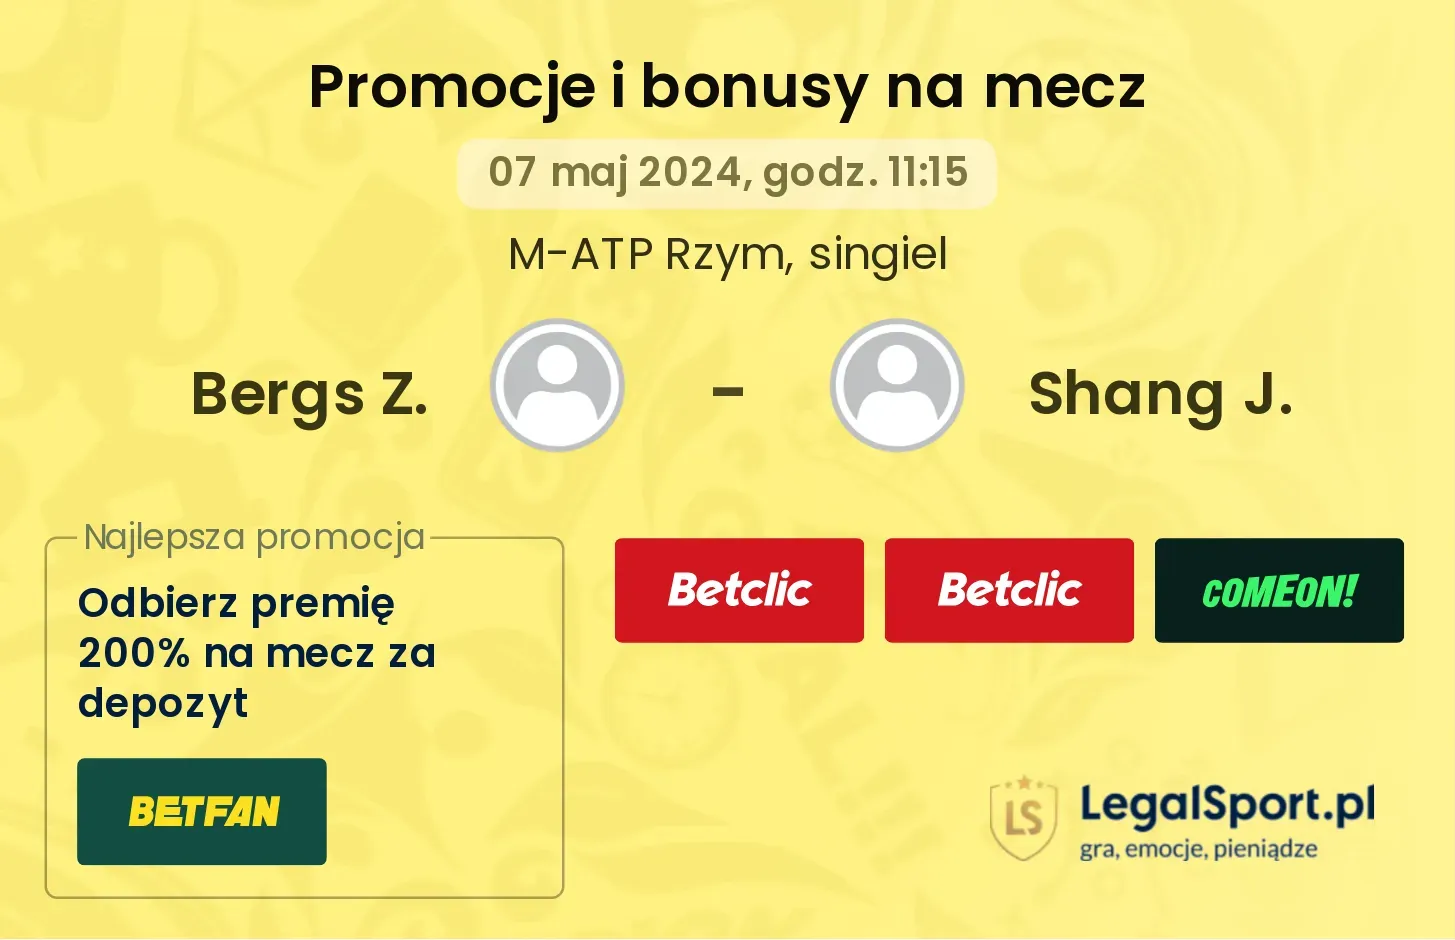 Bergs Z. - Shang J. promocje bonusy na mecz